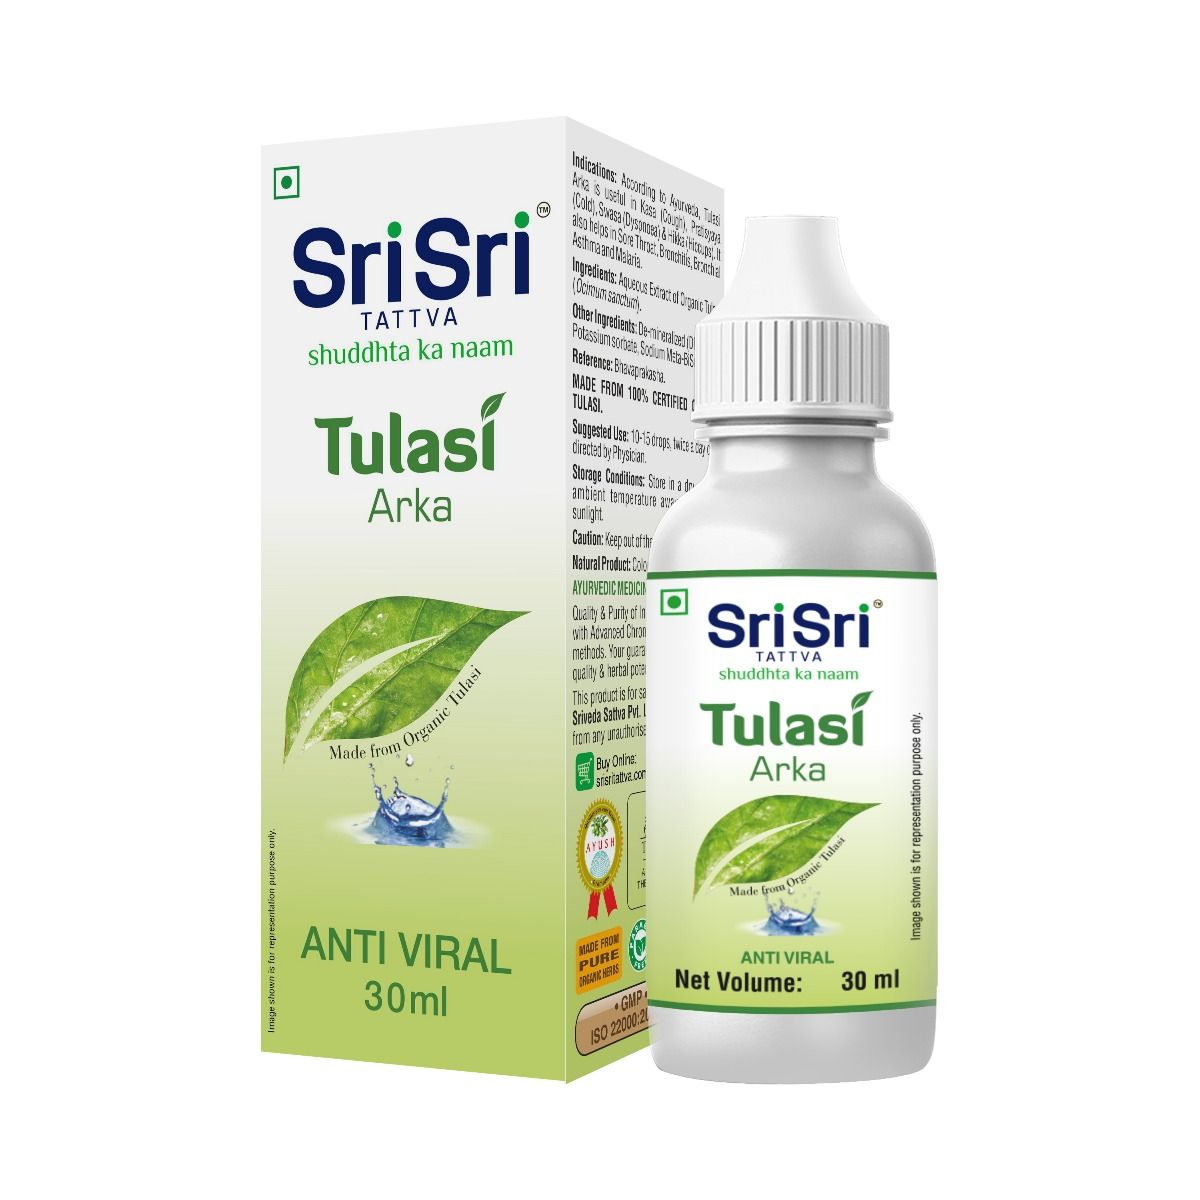 Sri Sri Tattva Tulasi Arka, 30 ml Price, Uses, Side Effects ...